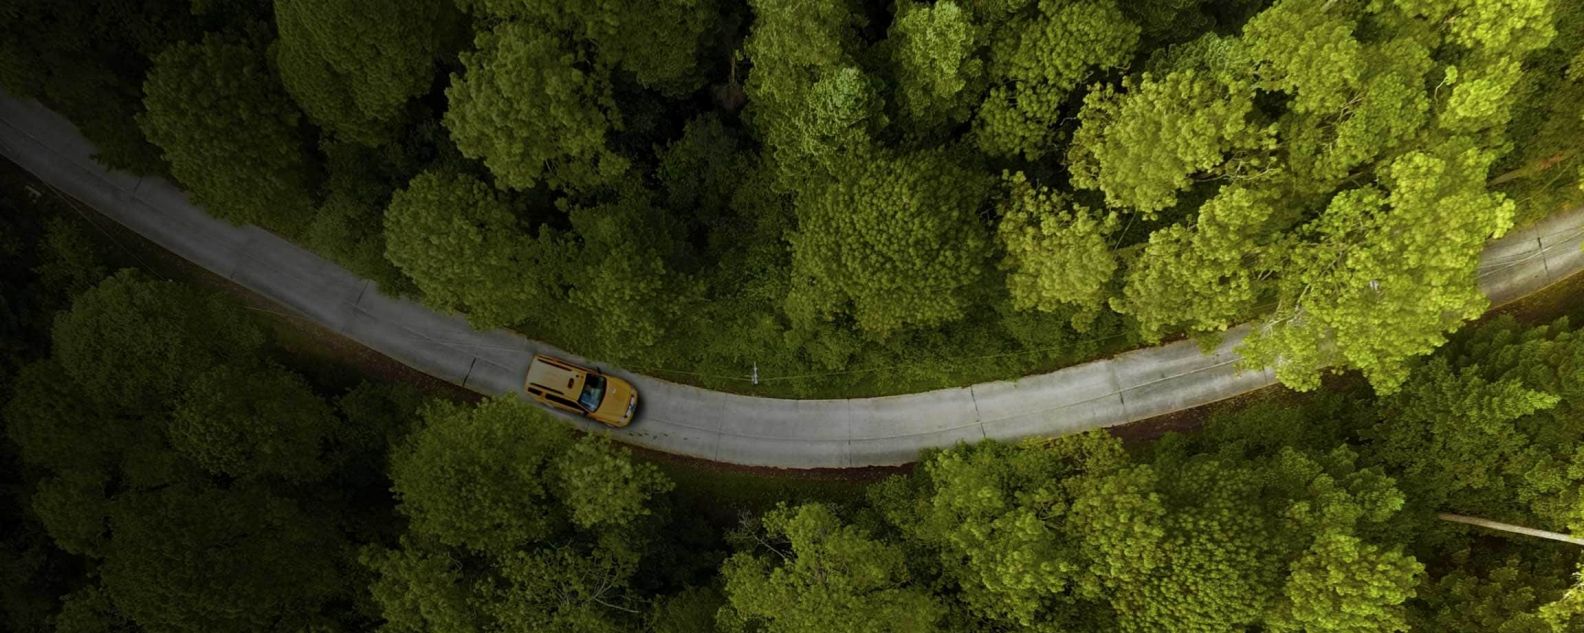 Luftaufnahme des Autofahrens auf einer Straße mit Bäumen auf beiden Seiten